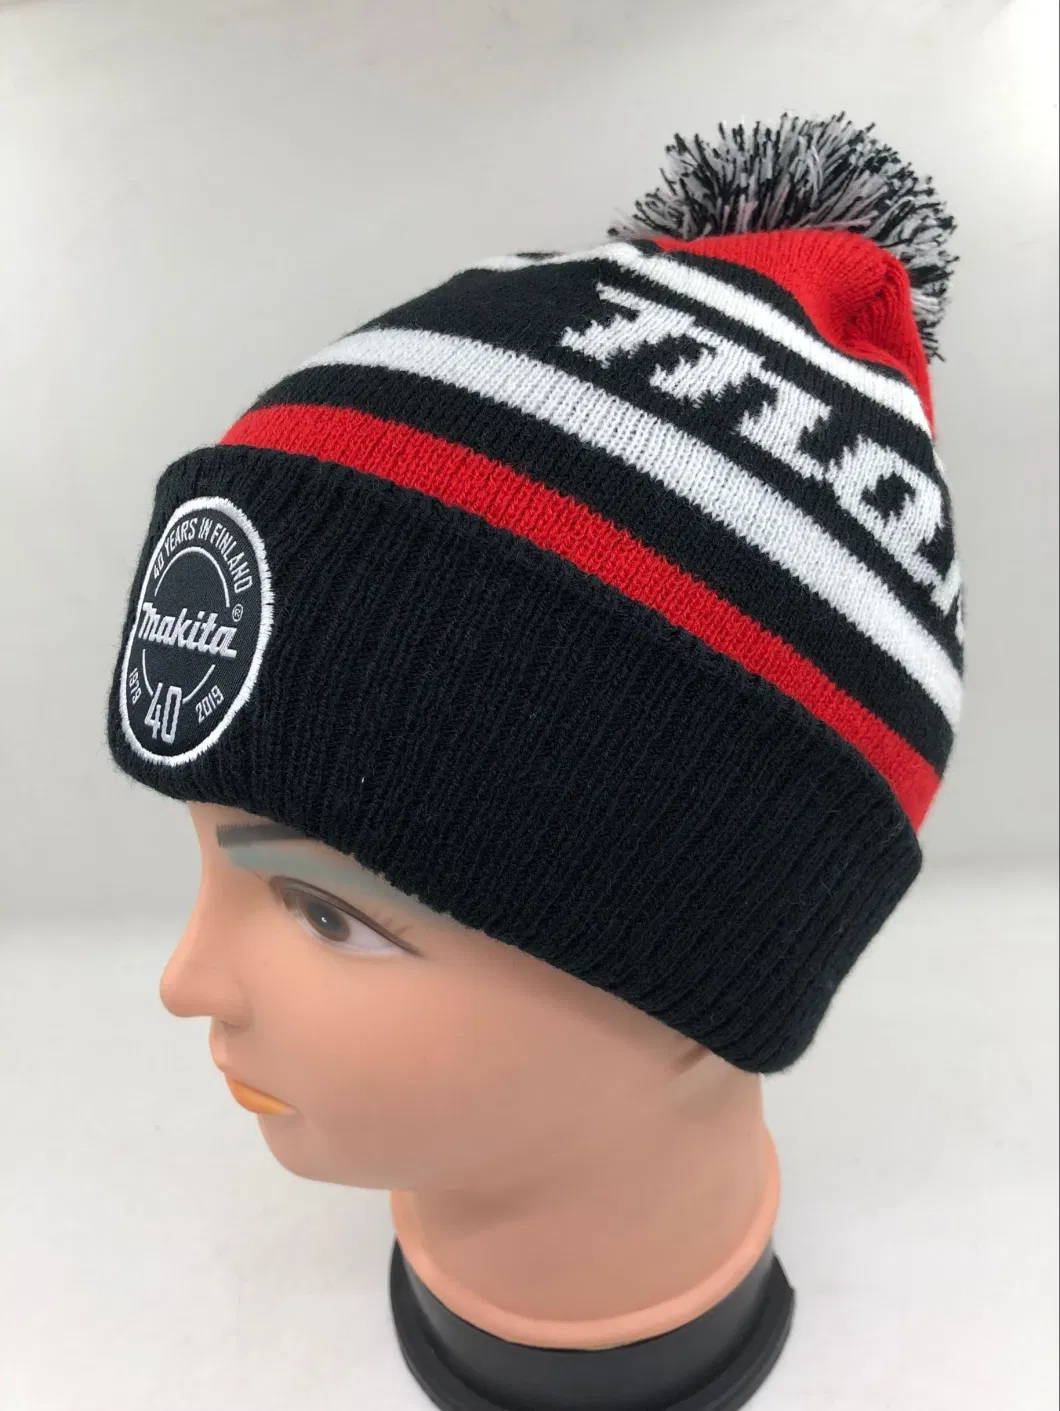 Custom Knit POM Embroidery Beanie 100% Acrylic Spandex Wholesale Winter Warm Cap Hat